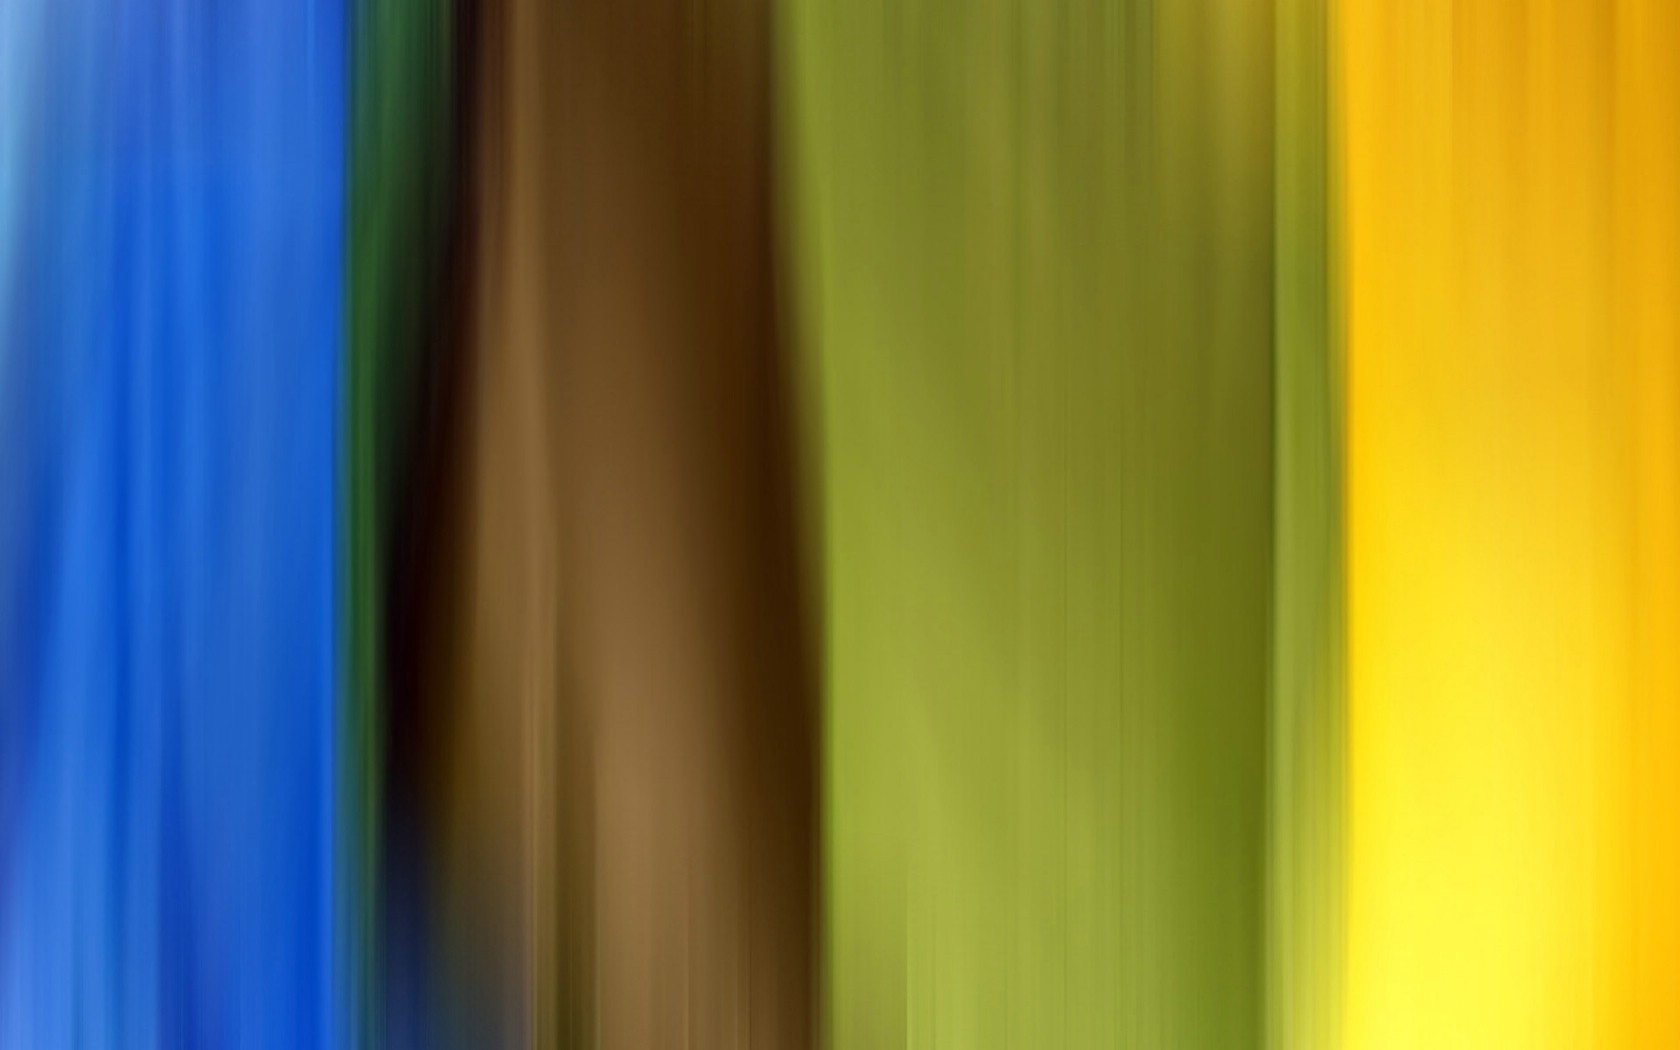 壁纸1680x1050 Abstact Colours 抽象色彩背景图片壁纸壁纸 抽象色彩视觉设计壁纸(第十二辑)壁纸 抽象色彩视觉设计壁纸(第十二辑)图片 抽象色彩视觉设计壁纸(第十二辑)素材 插画壁纸 插画图库 插画图片素材桌面壁纸